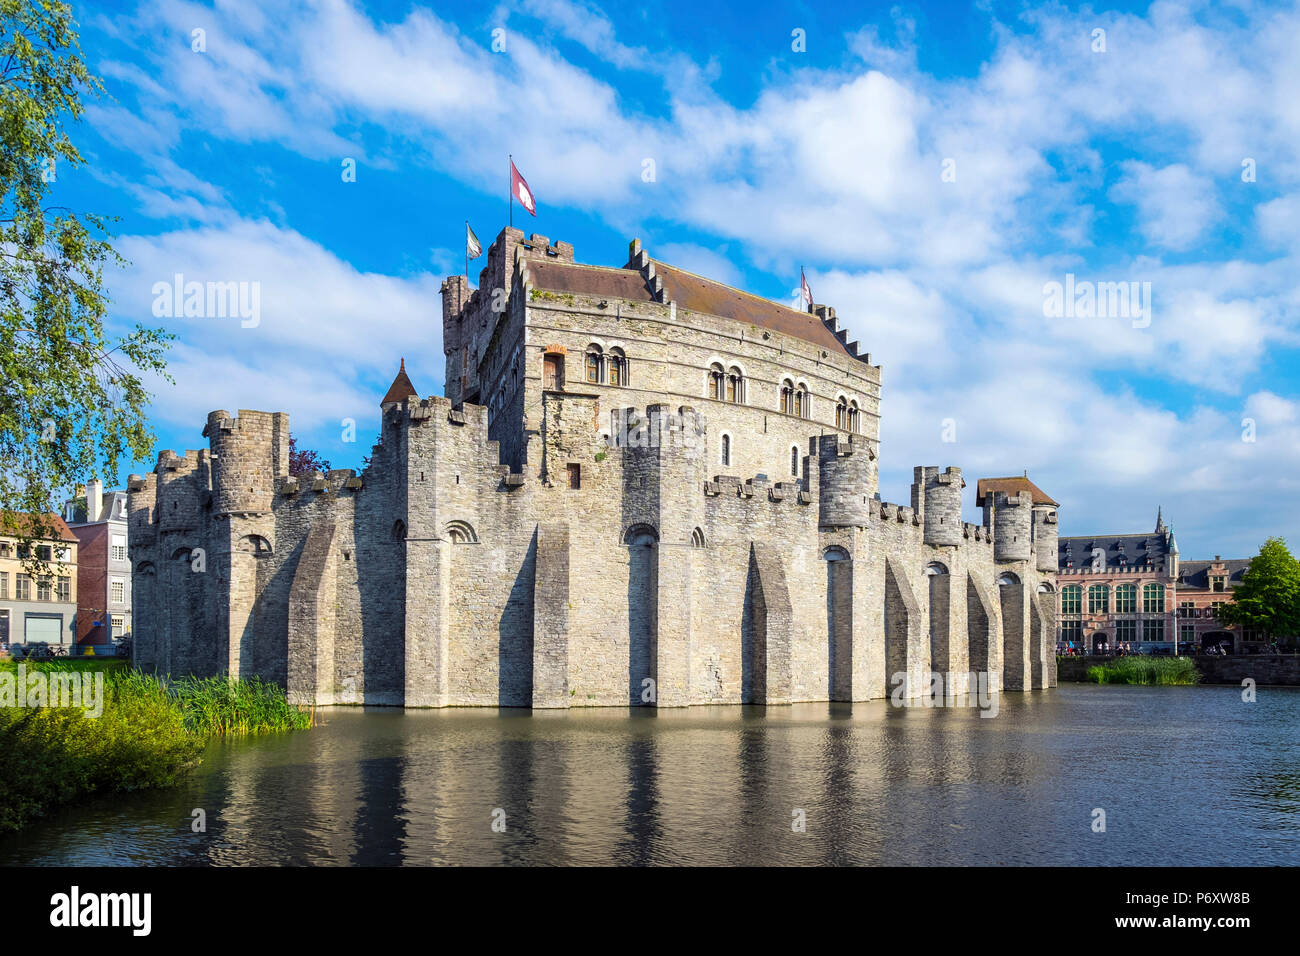 Belgum, Vlaanderen (Flanders), Ghent (Gent). Het Gravensteen castle on the Leie River. Stock Photo